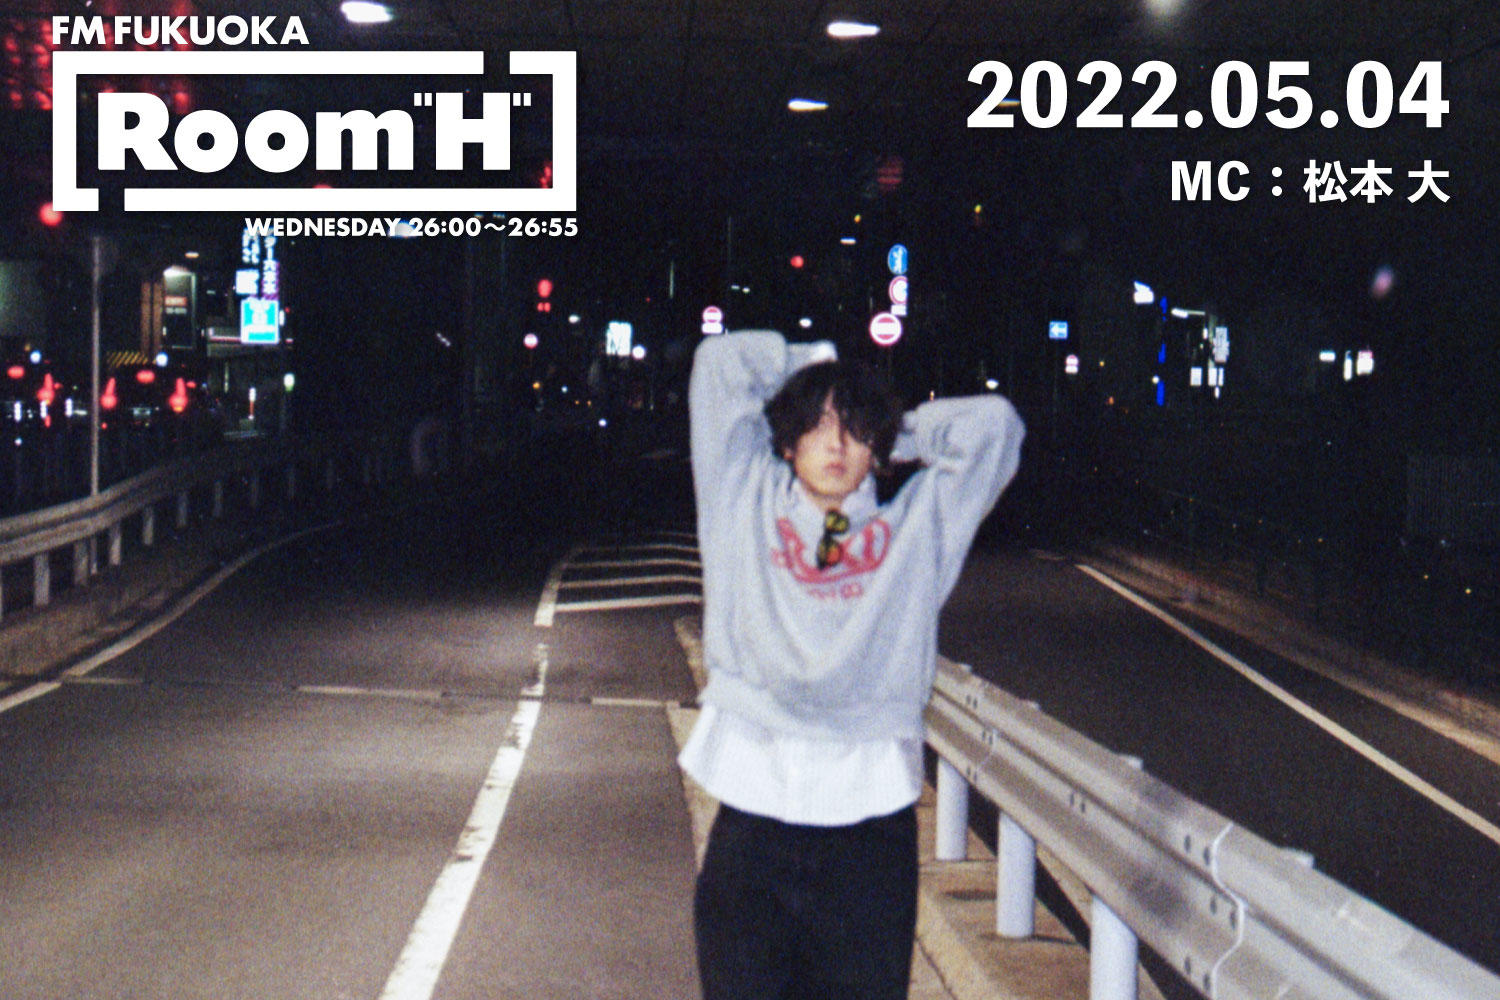 【読むラジオ】MC：松本大 友達の新譜を紹介！「Room H」 -2022.05.04-